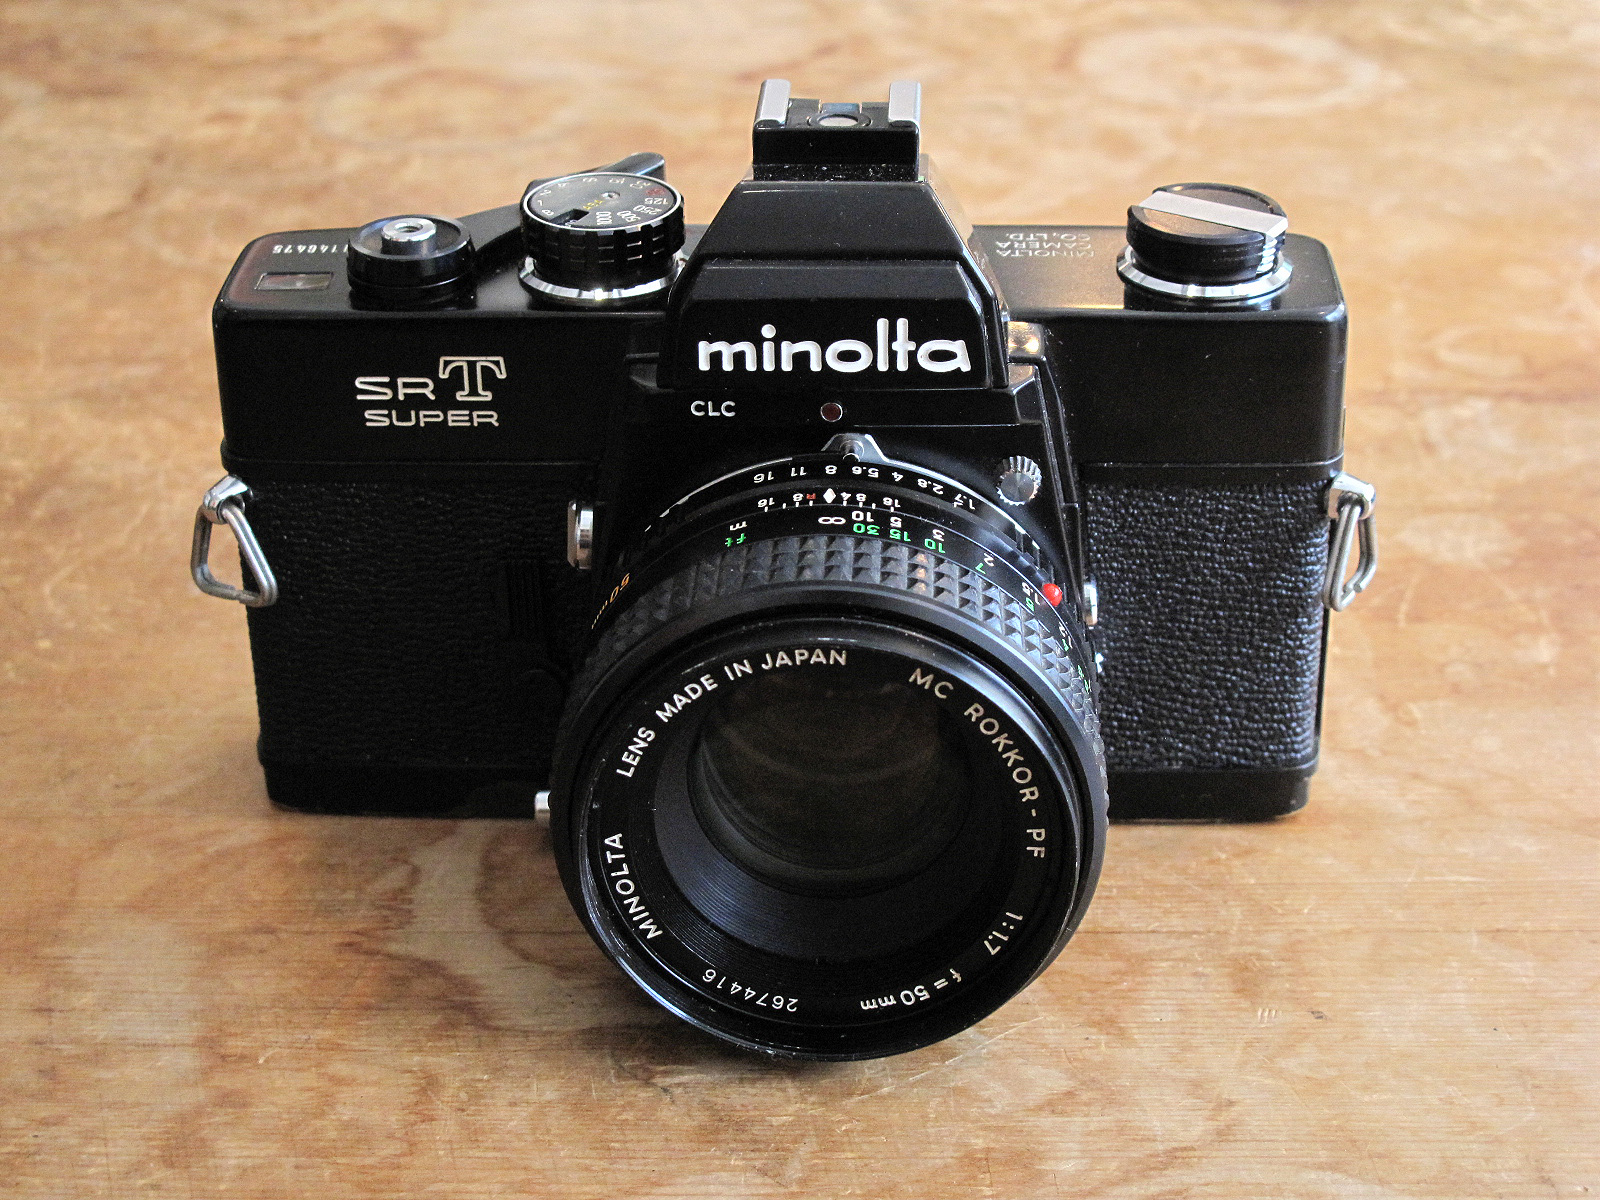 minolta SRT Super | イエネコカメラ 名古屋市 中古フィルムカメラを修理販売